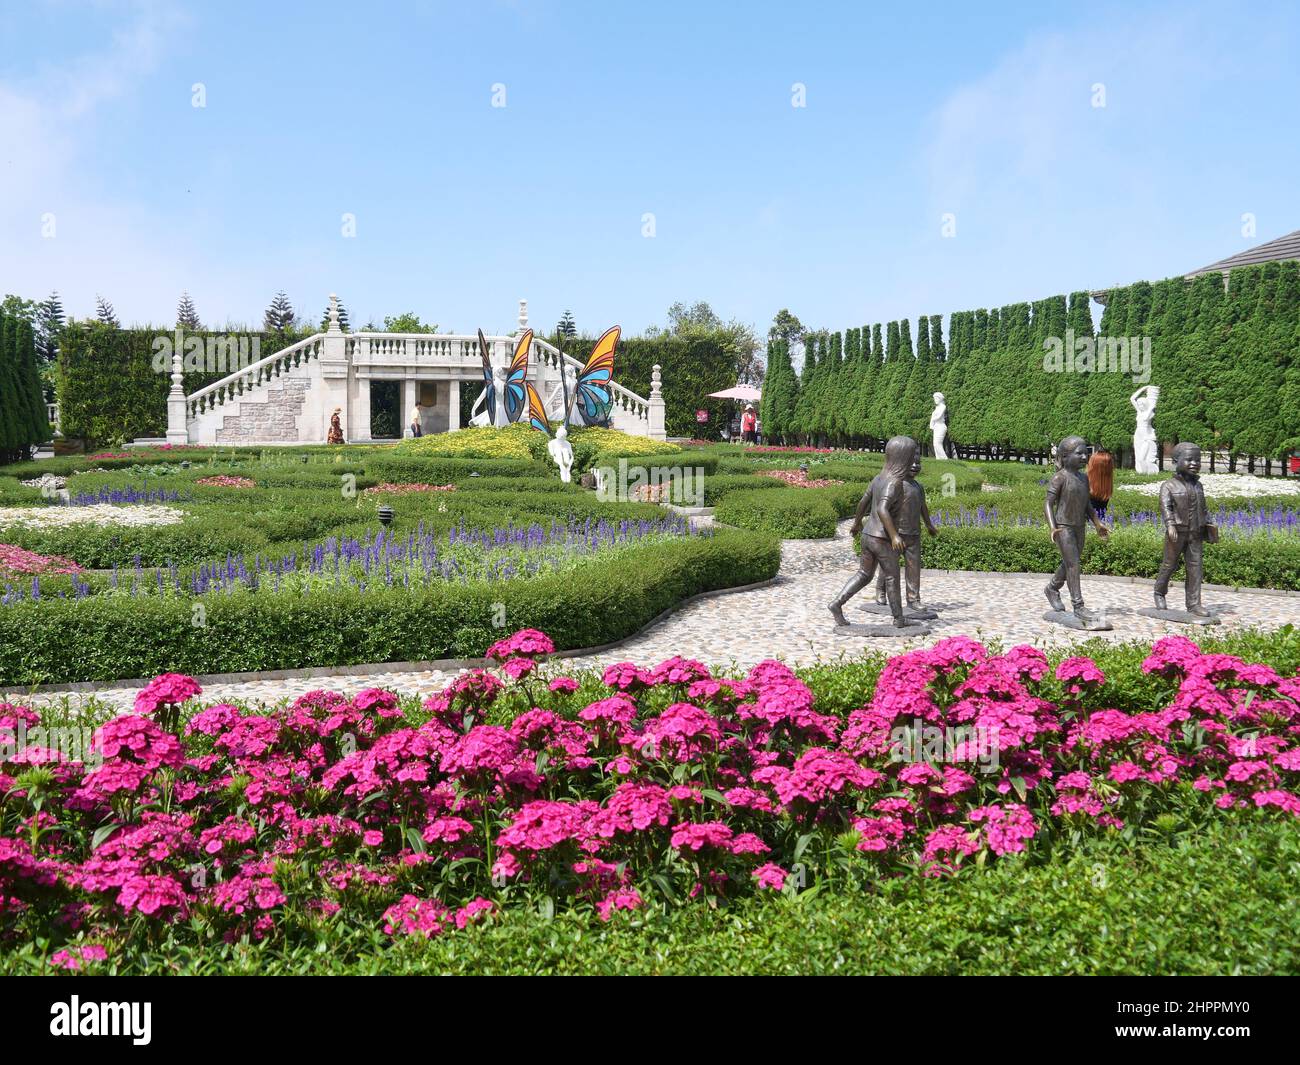 Da Nang, Vietnam - 12 avril 2021 : touristes dans le jardin des fleurs et des statues des collines de Ba Na, un célèbre parc à thème et station balnéaire dans le centre du Vietnam Banque D'Images